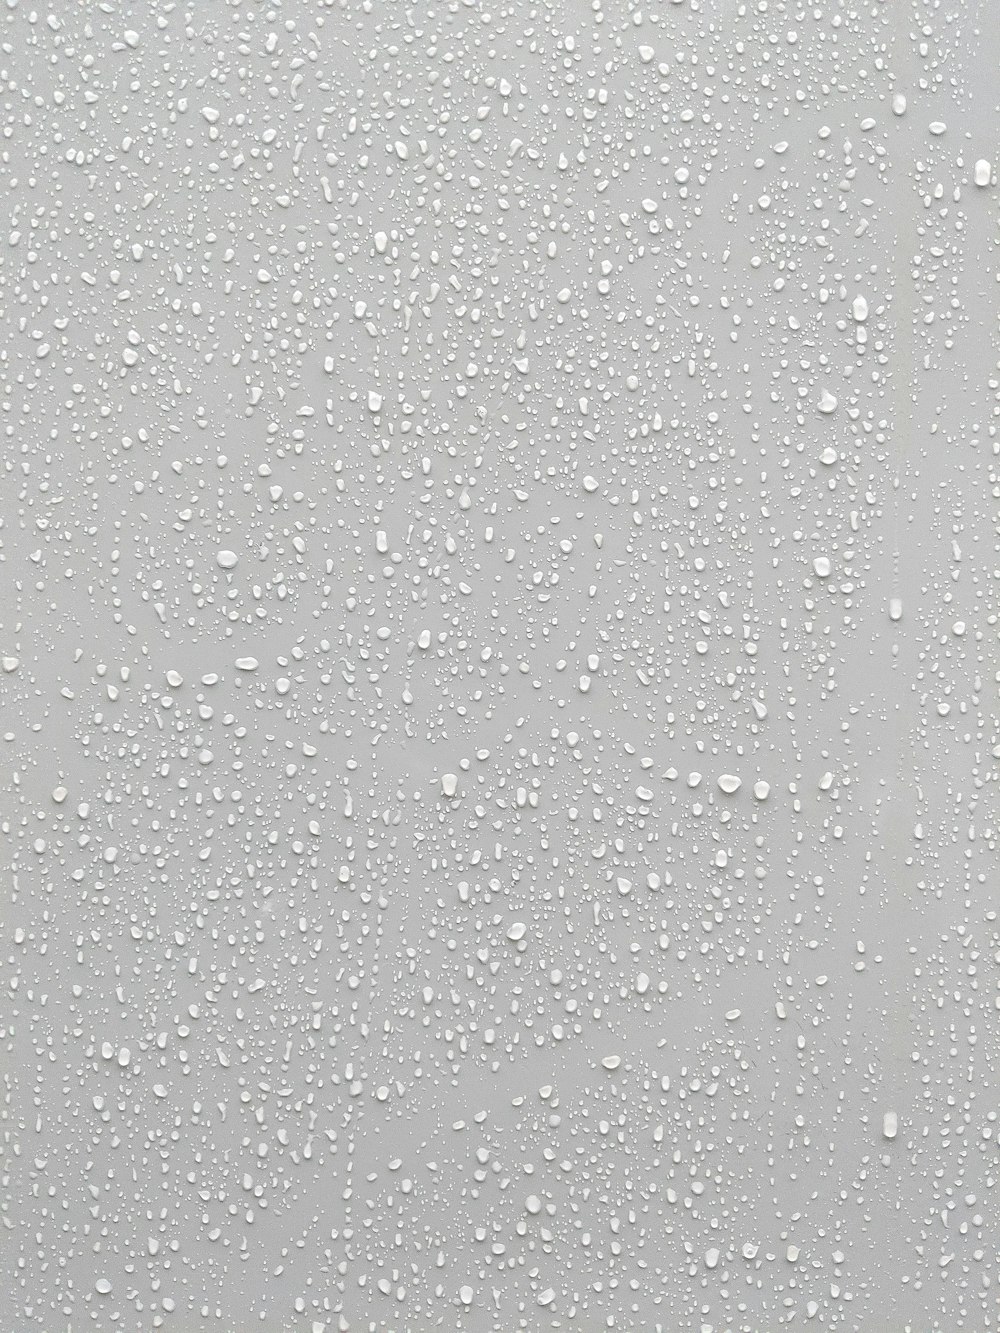 gocce d'acqua su una superficie di vetro con uno sfondo bianco